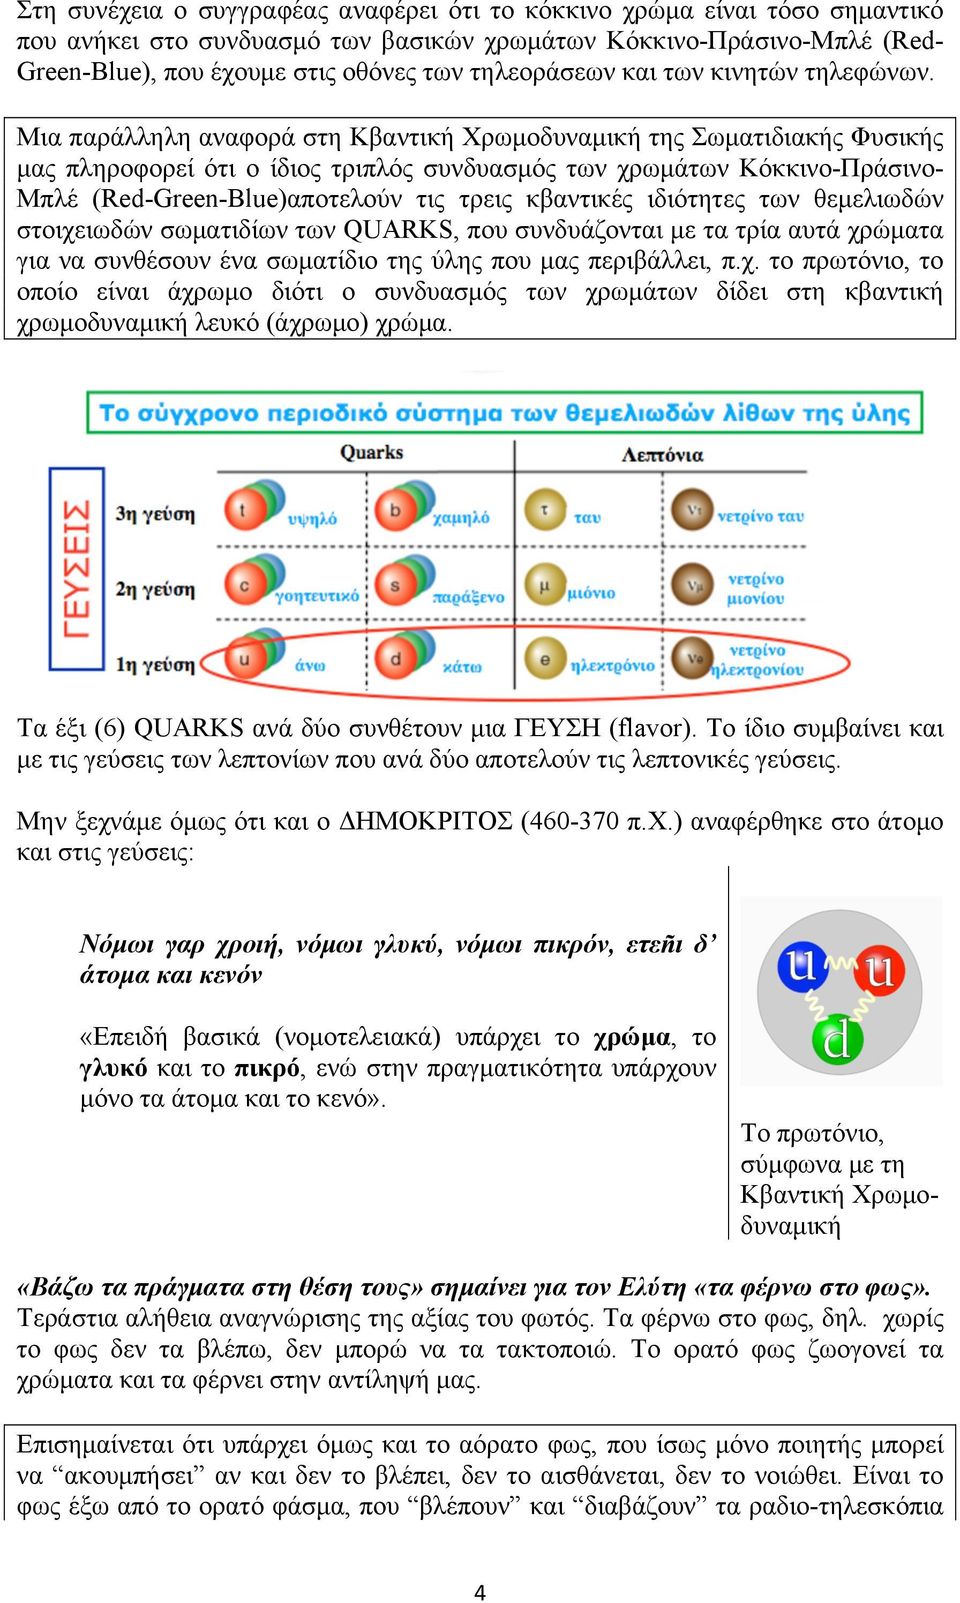 Μια παράλληλη αναφορά στη Κβαντική Χρωµοδυναµική της Σωµατιδιακής Φυσικής µας πληροφορεί ότι ο ίδιος τριπλός συνδυασµός των χρωµάτων Κόκκινο-Πράσινο- Μπλέ (Red-Green-Blue)αποτελούν τις τρεις